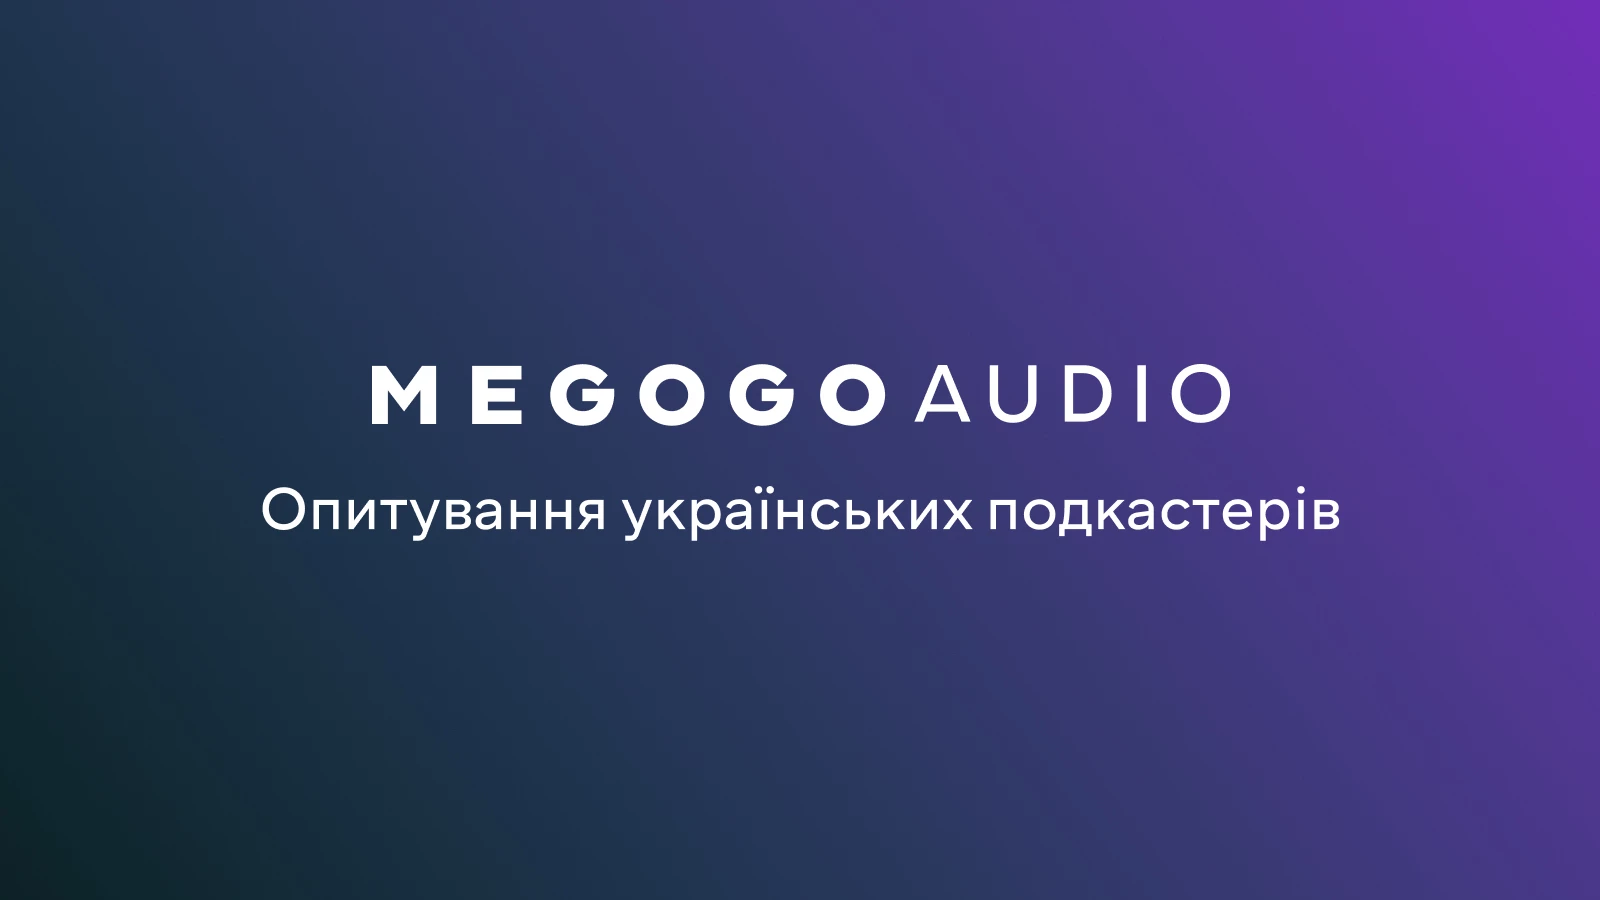 Megogo Audio запускає дослідження українського ринку подкастингу